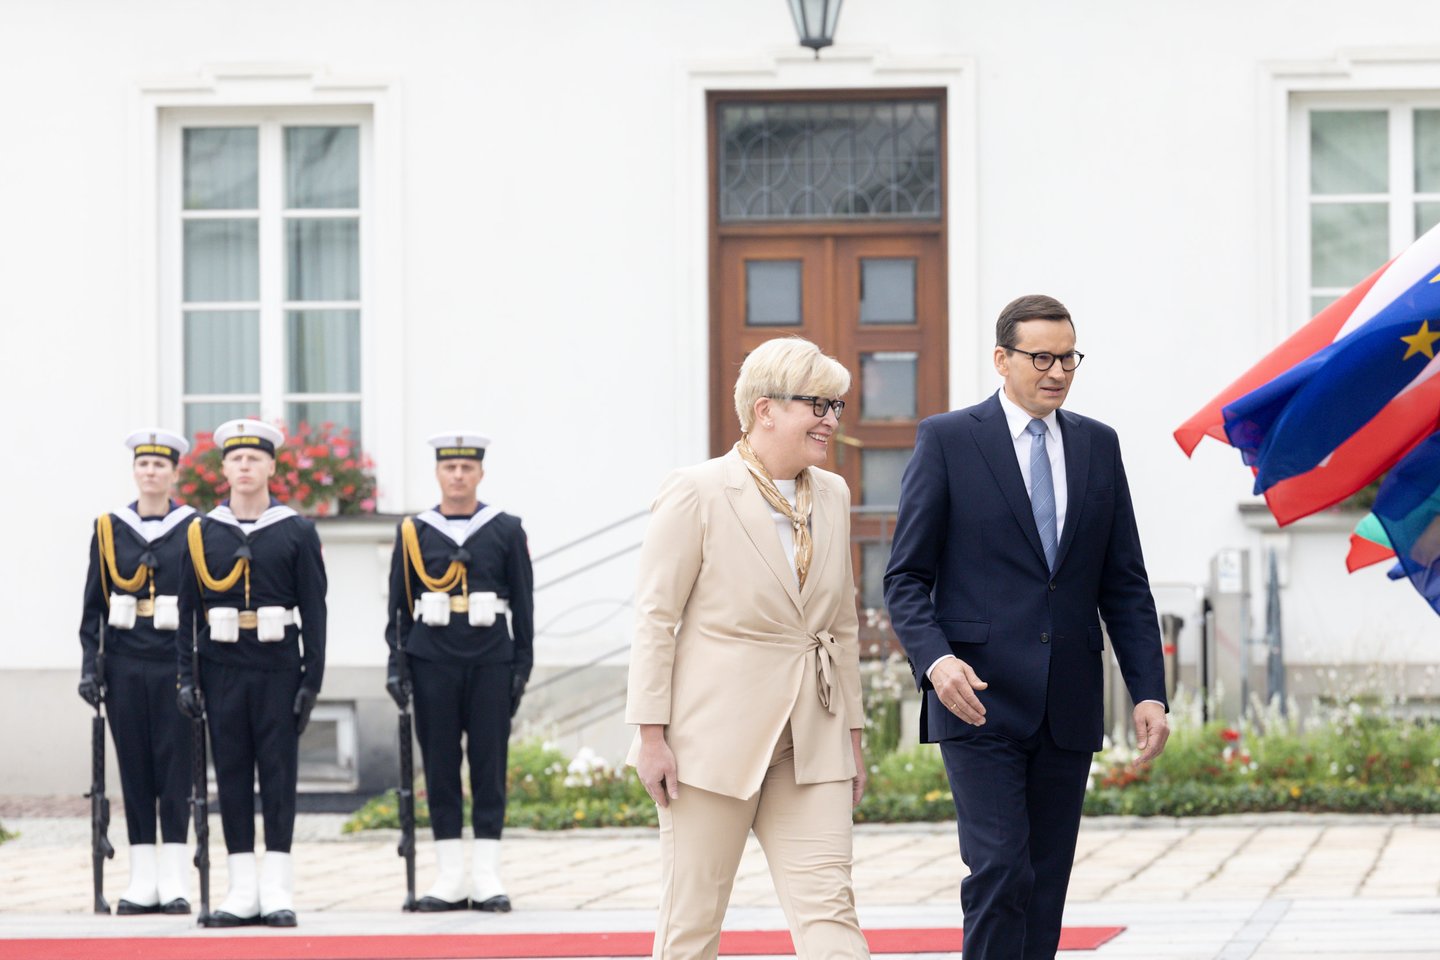  Varšuvoje vyko antrasis bendras Lietuvos ir Lenkijos vyriausybių posėdis, kuriam pirmininkavo I.Šimonytė ir Lenkijos Ministras Pirmininkas M.Morawieckis. <br> LRVK/L.Penek nuotr.